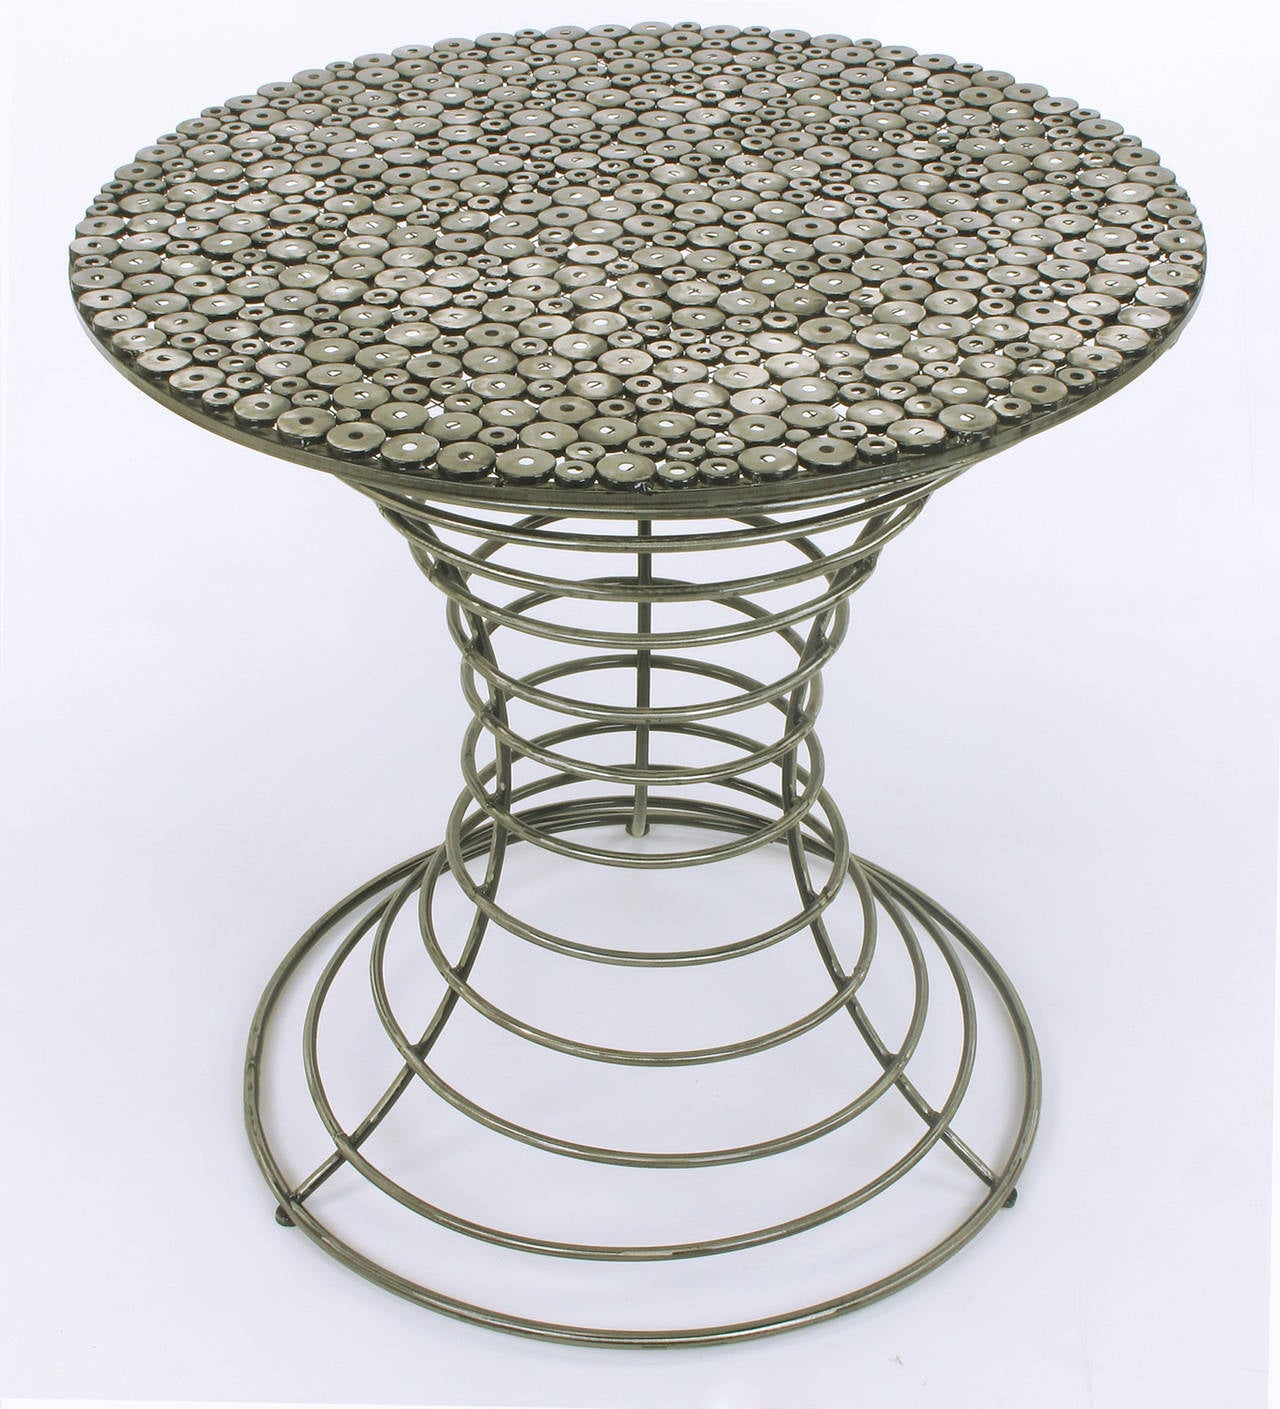 Ungewöhnlicher Tisch in Mittel- oder Bistrogröße aus runden Metallrohren, Metallscheiben, die mit einem Metallgitter verschweißt sind und mit einem durchscheinenden schwarzen Lack besprüht wurden, um die Kurven und nichtlinearen Aspekte dieses